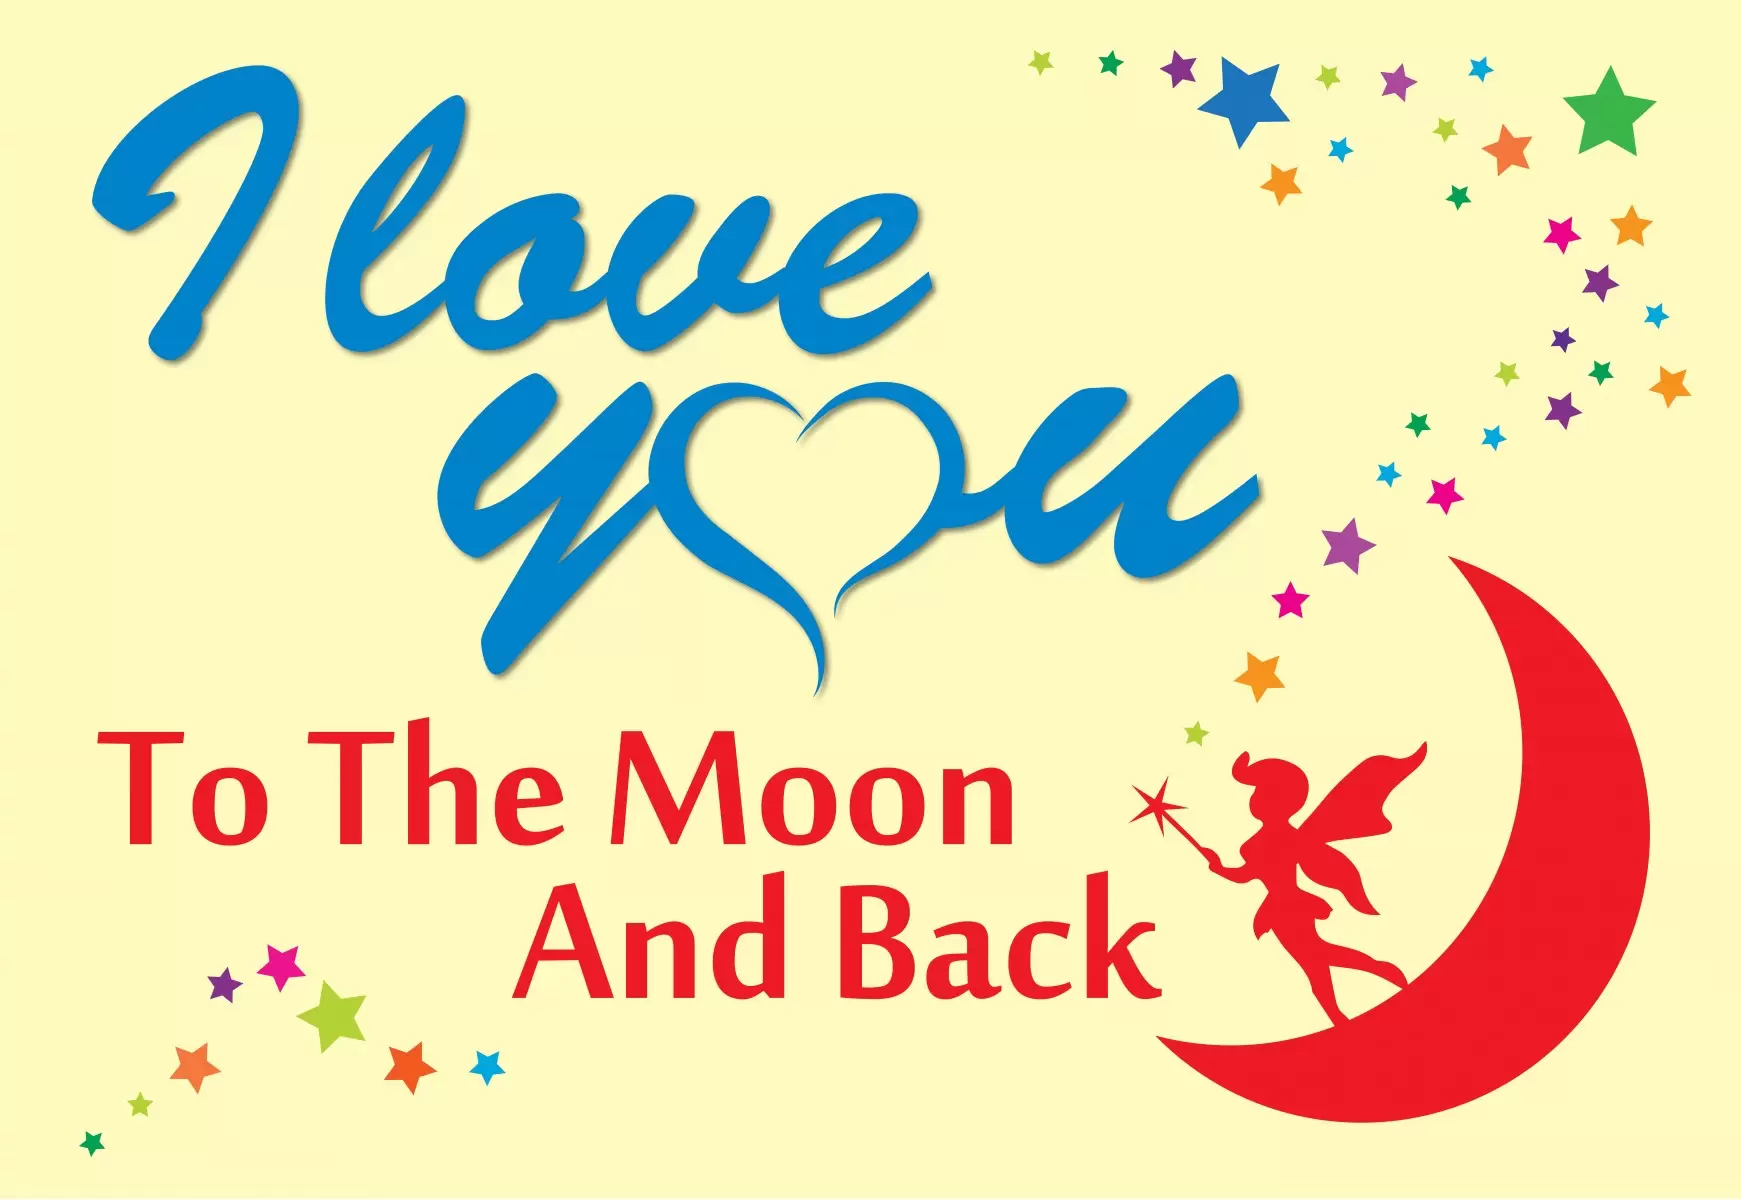 Love you to the moon - מסגרת עיצובים - מדבקות קיר משפטי השראה טיפוגרפיה דקורטיבית  - מק''ט: 240687